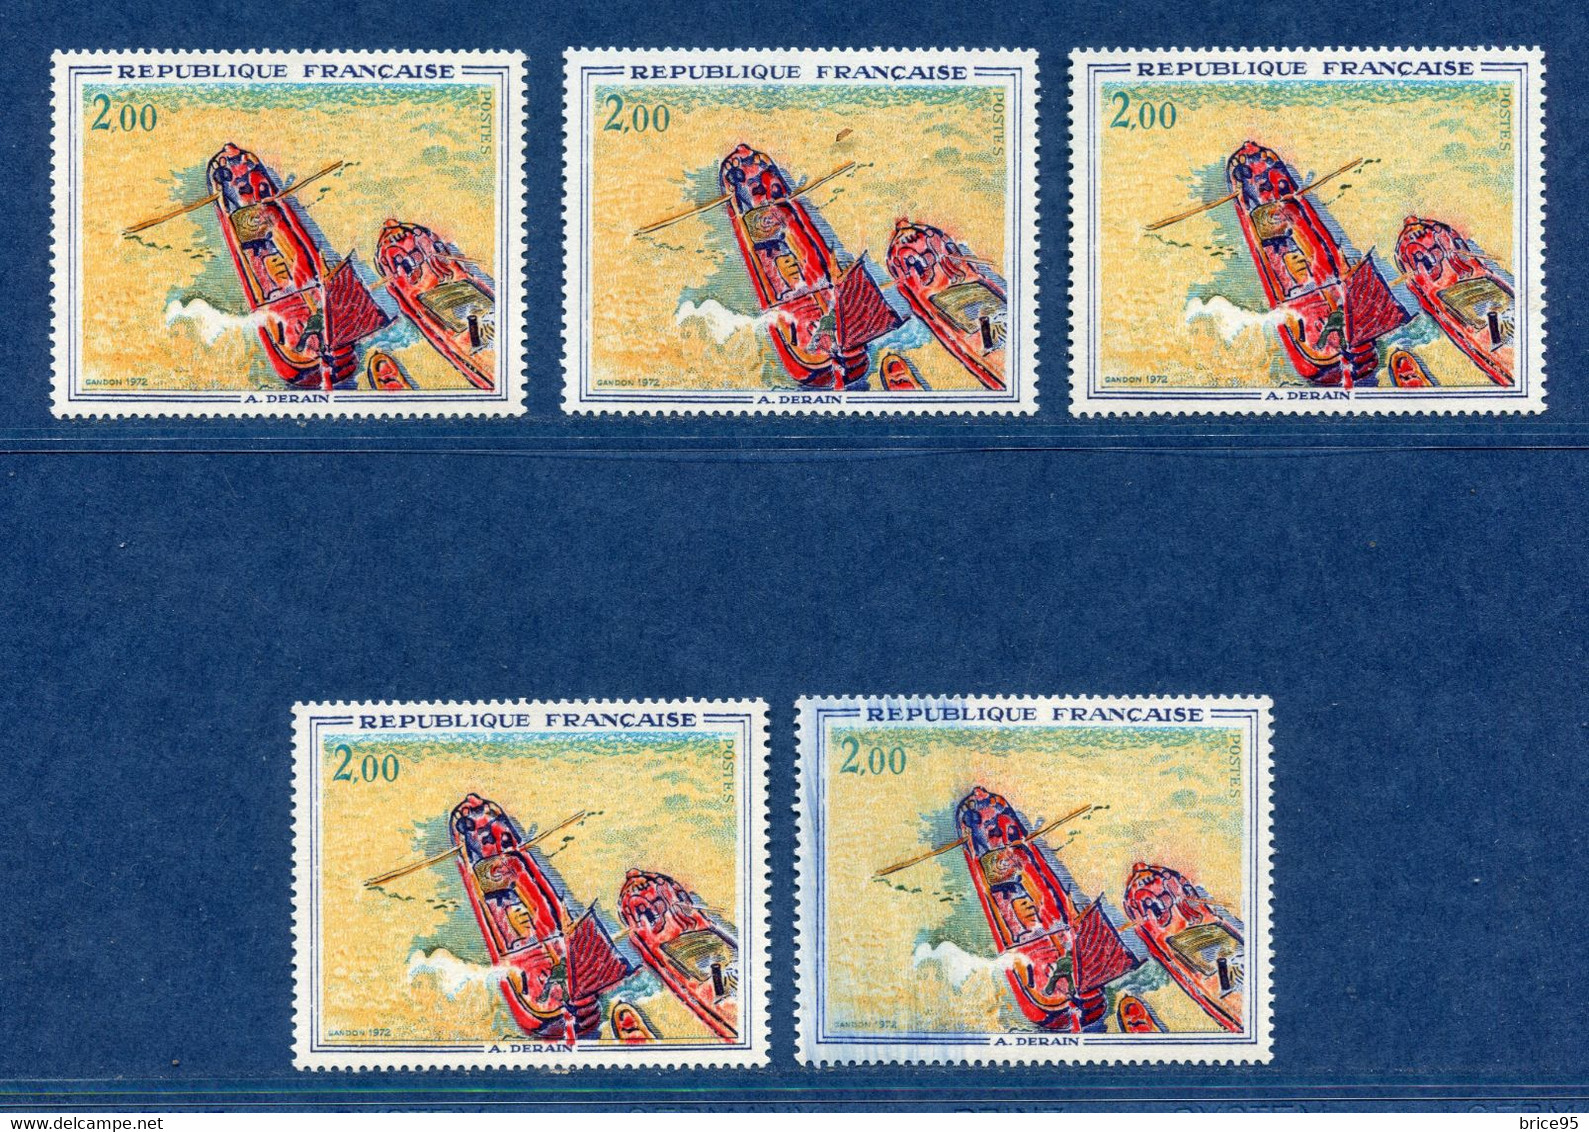 ⭐ France - Variété - YT N° 1733 - Couleurs - Pétouilles - Neuf Sans Charnière - 1972 ⭐ - Unused Stamps